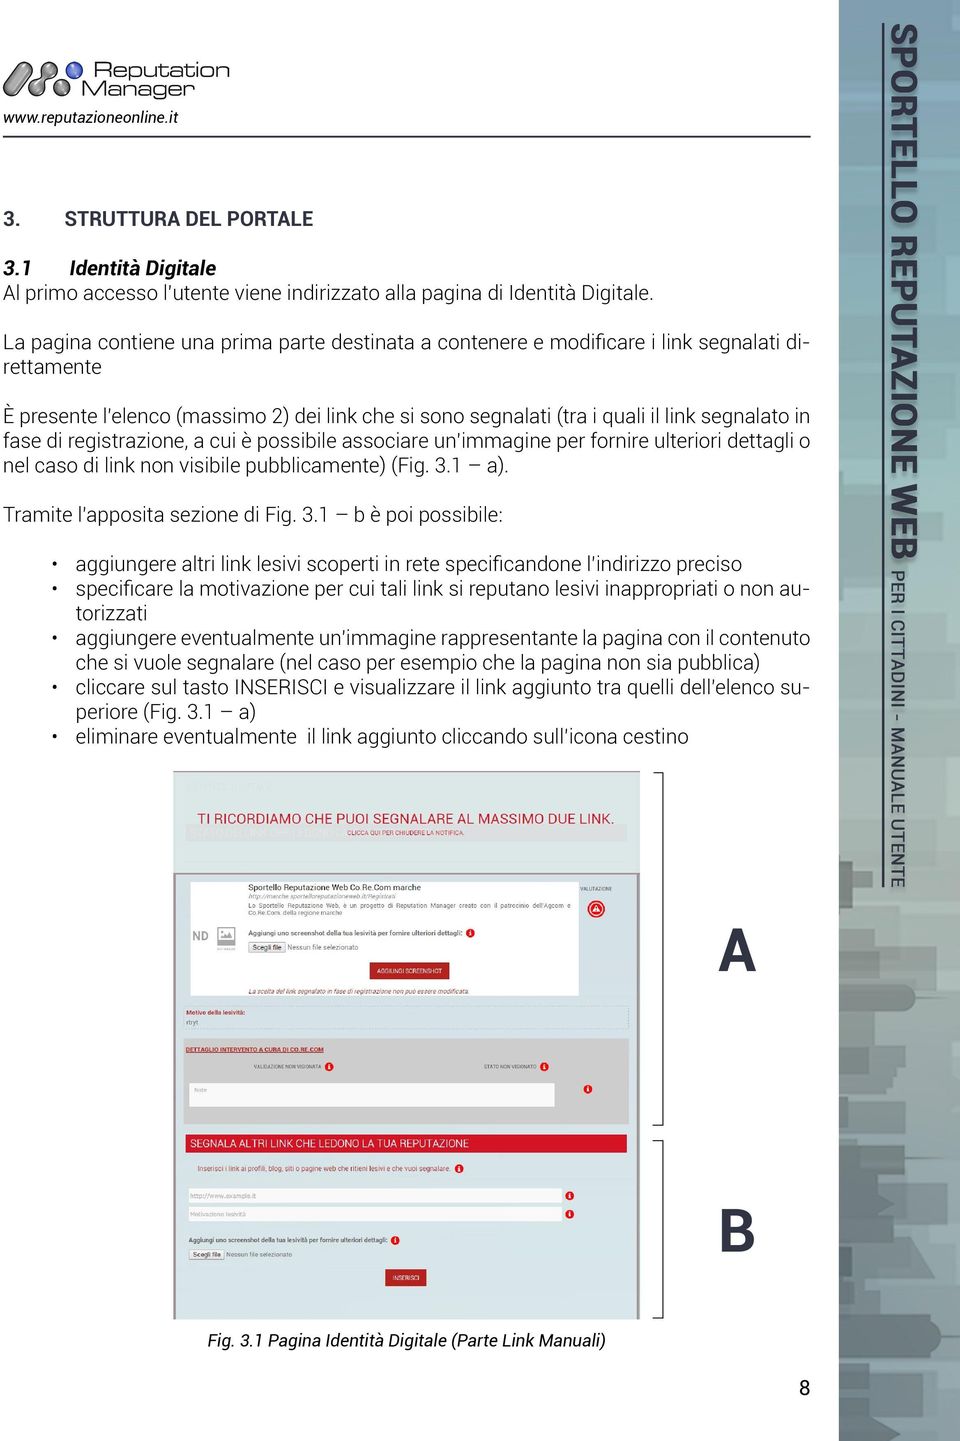 fase di registrazione, a cui è possibile associare un immagine per fornire ulteriori dettagli o nel caso di link non visibile pubblicamente) (Fig. 3.